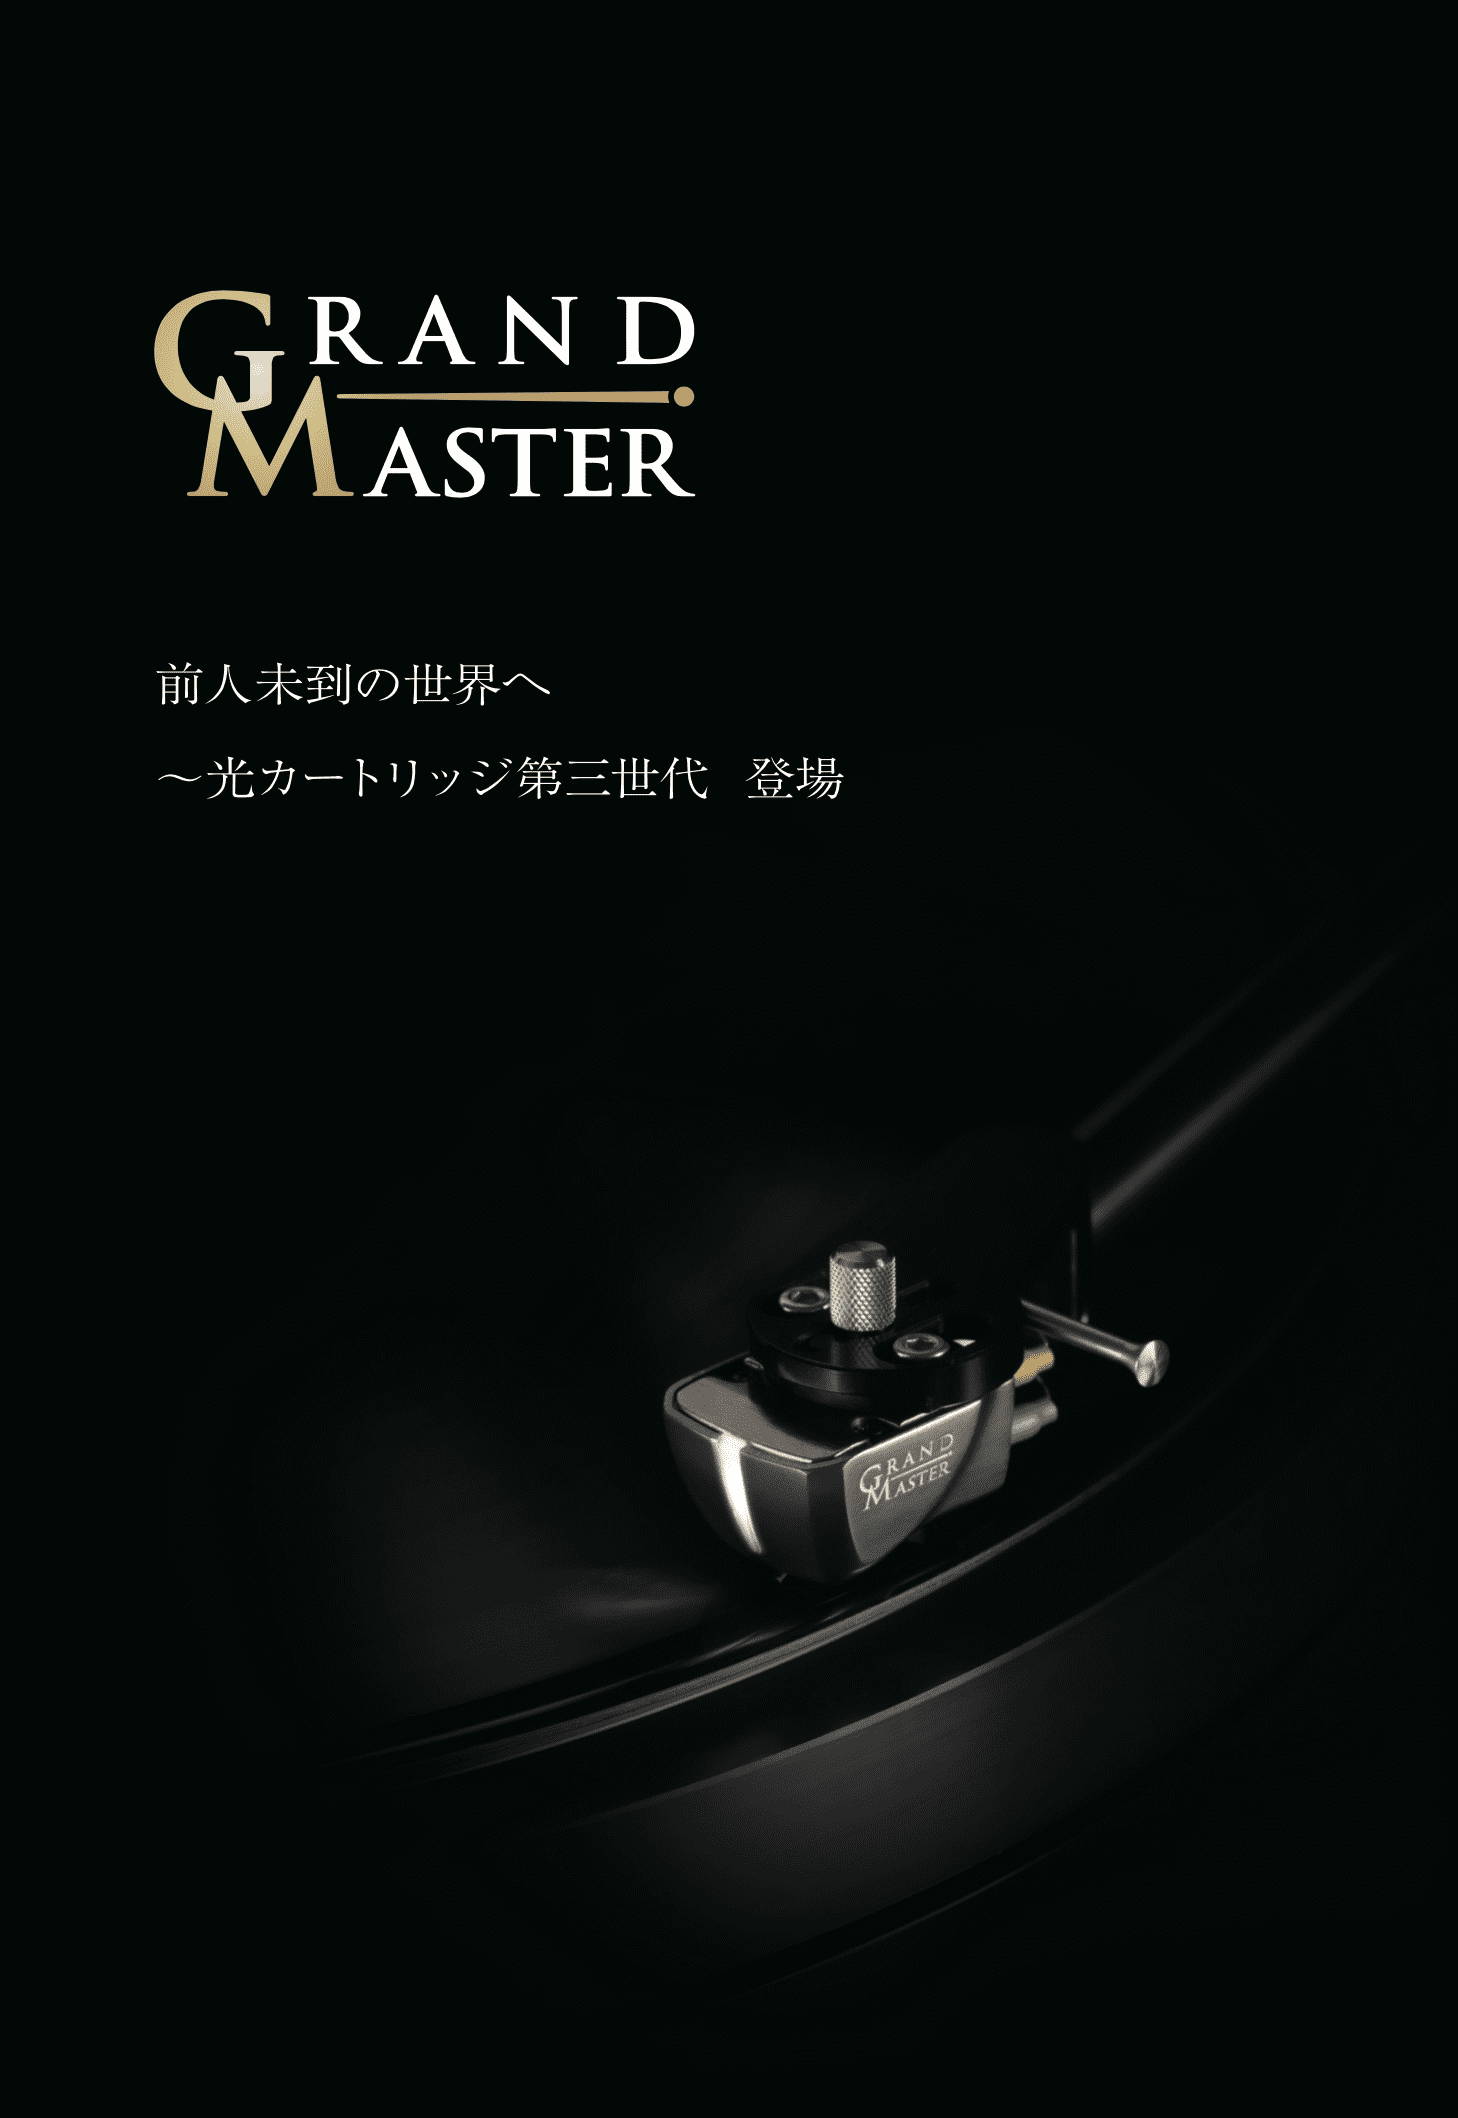 Grand Master カタログ